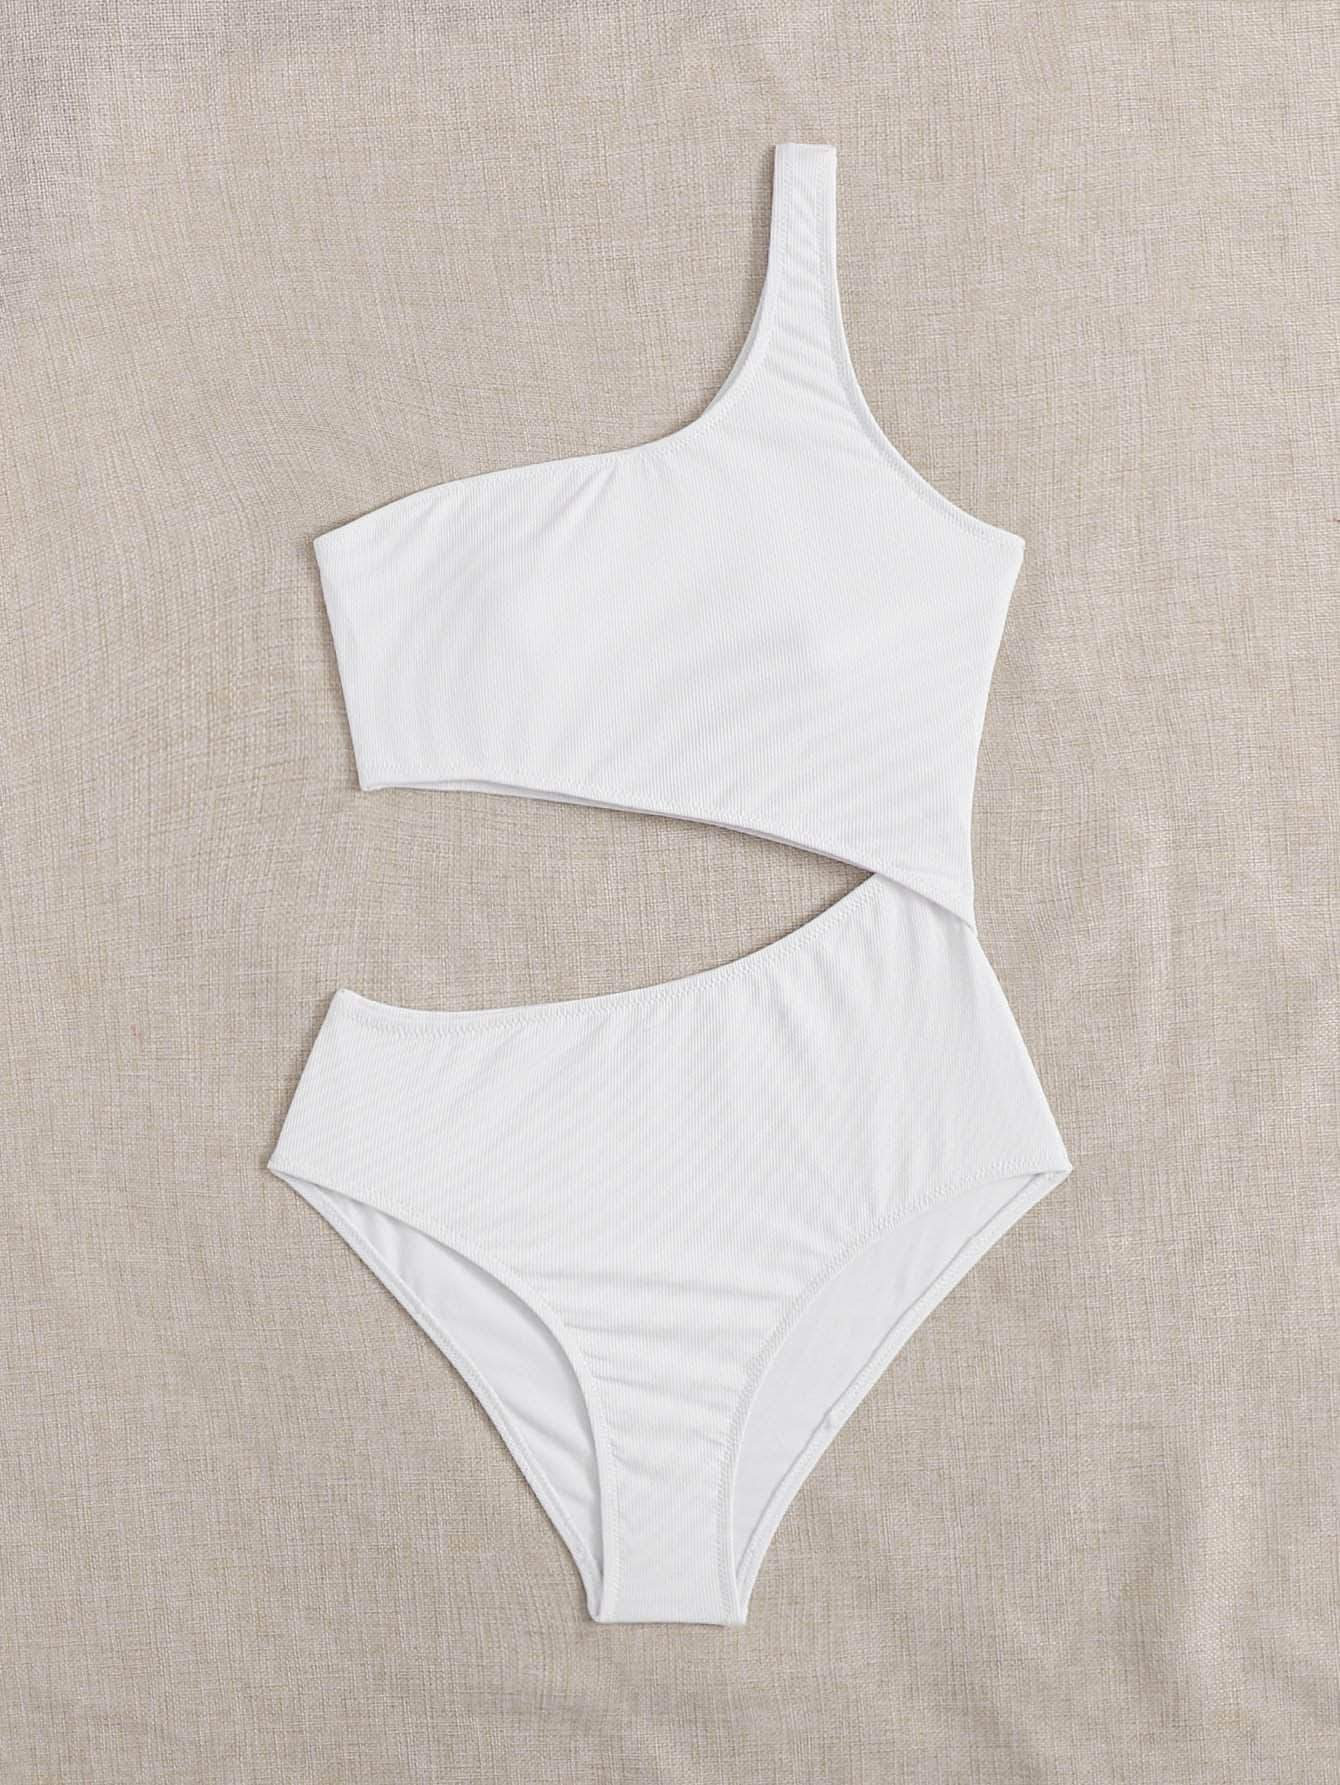 Blanco / XS Vestido de baño una pieza de un hombro con abertura